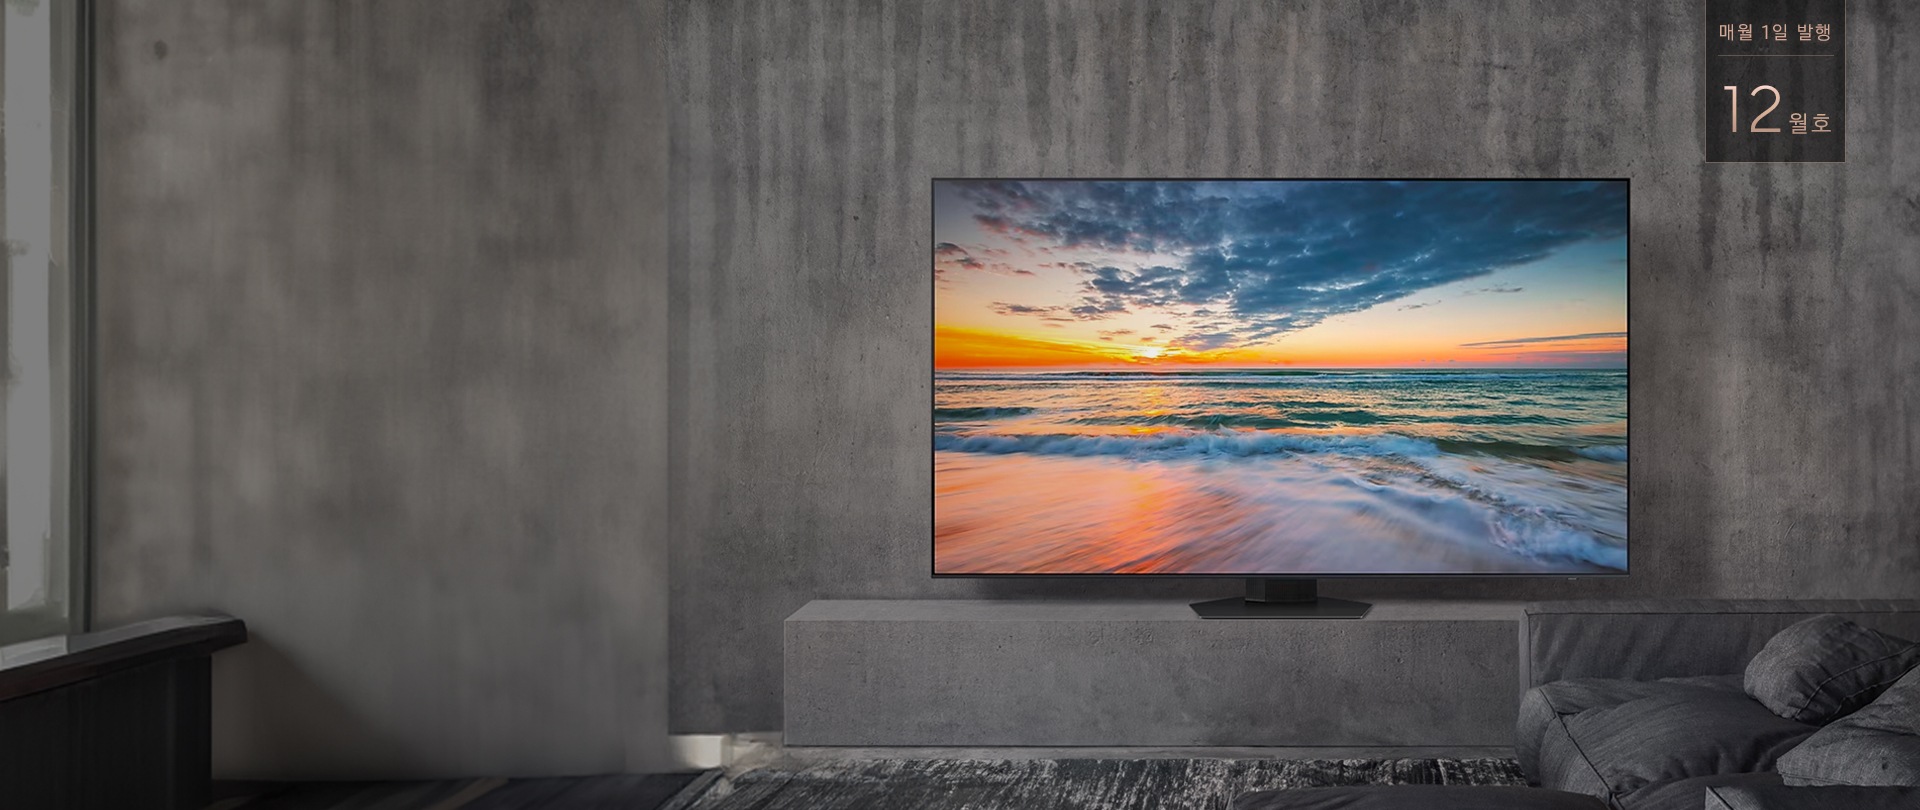 삼성닷컴 월간TV 문구와 흑백 톤의 거실을 배경으로 하고 있으며 거실장 위에 바다 화면을 보여주고 있는 TV가 놓여져있는 이미지